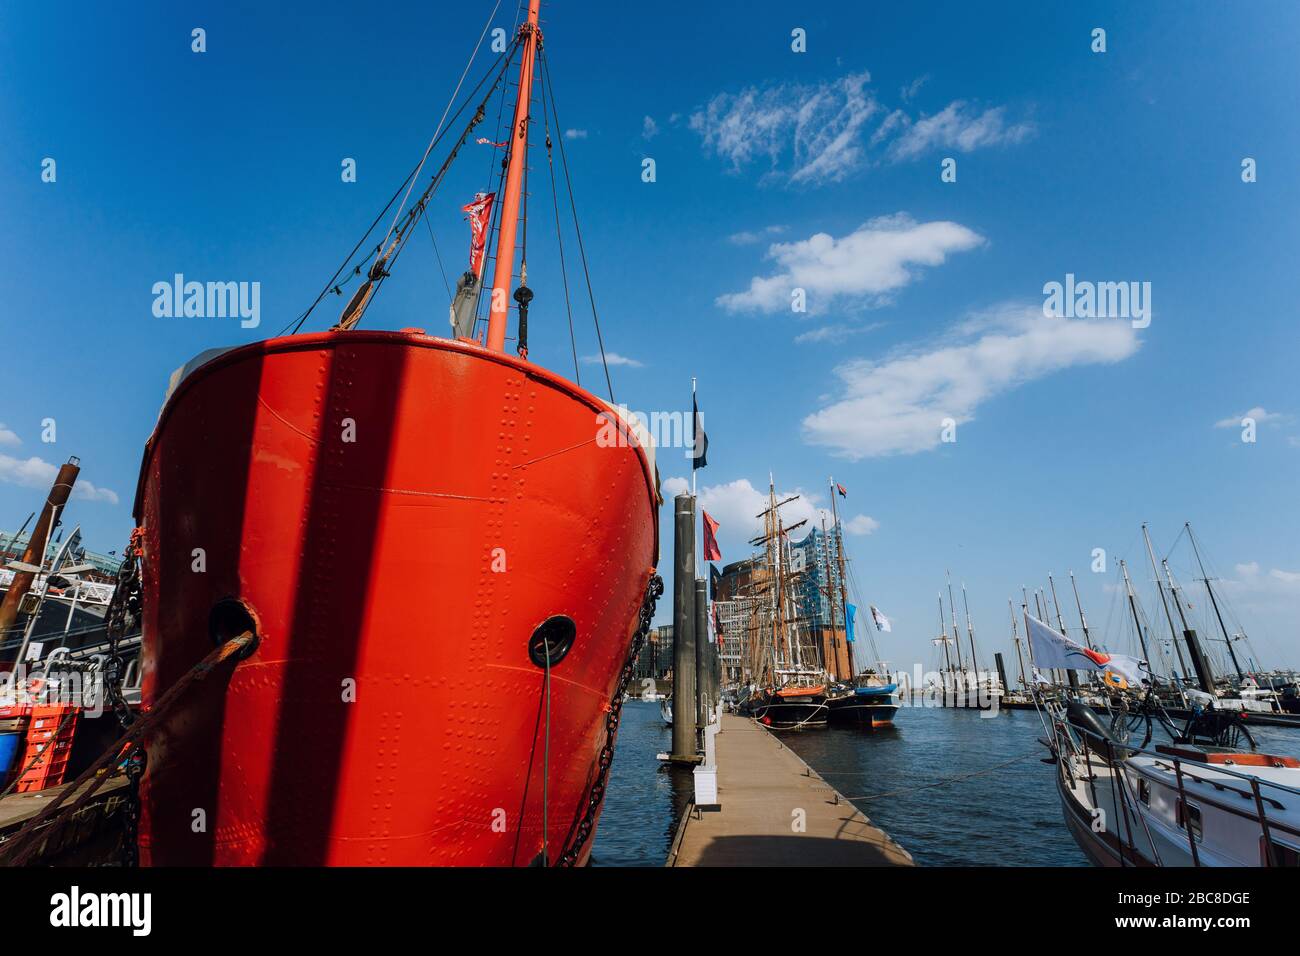 HAMBURG, 9. Mai 2018: Rotes Feuerwehr-Patrouillenboot im Hamburger Hafen mit Restaurant an Bord. Stockfoto